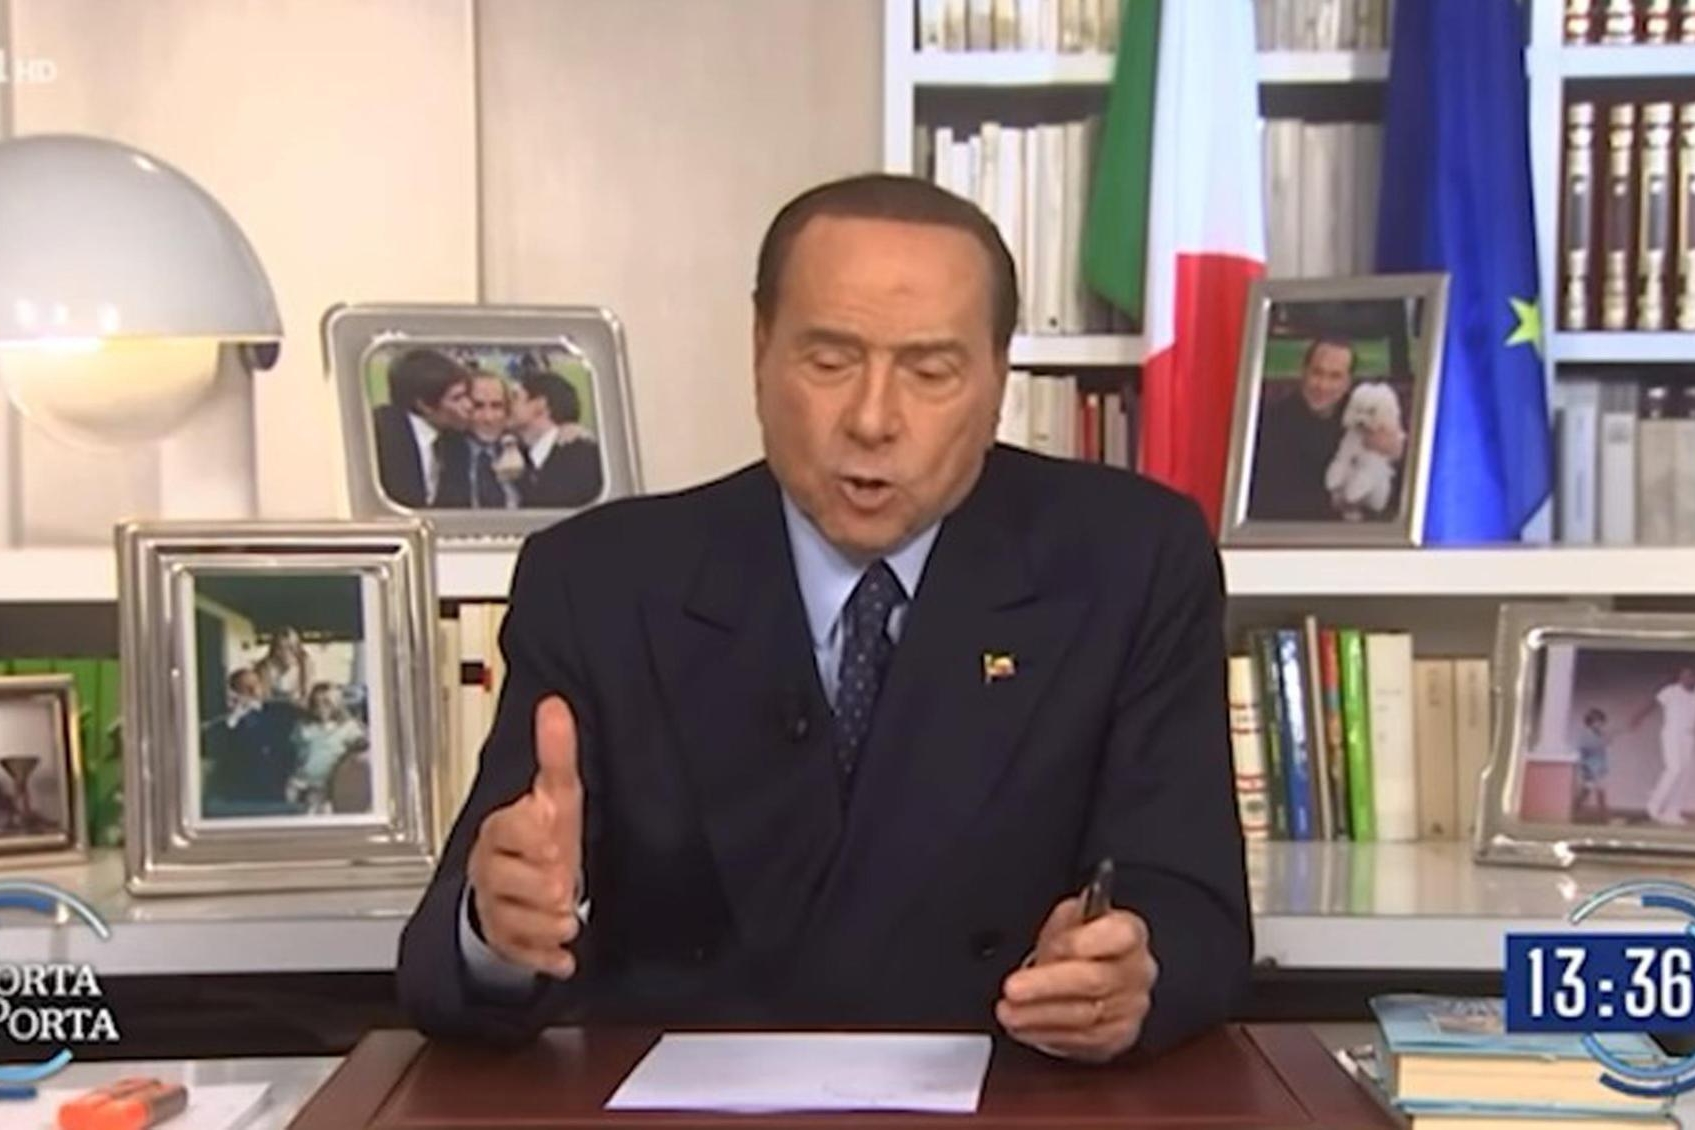 Silvio Berlusconi, leader di Fi, in un frame tratto da un video pubblicato su facebook. +++ FACEBOOK/SILVIO BERLUSCONI ++++ NPK +++ ATTENZIONE LA FOTO NON PUO' ESSERE RIPRODOTTA SENZA L'AUTORIZZAZIONE DELLA FONTE CUI SI RINVIA ++++